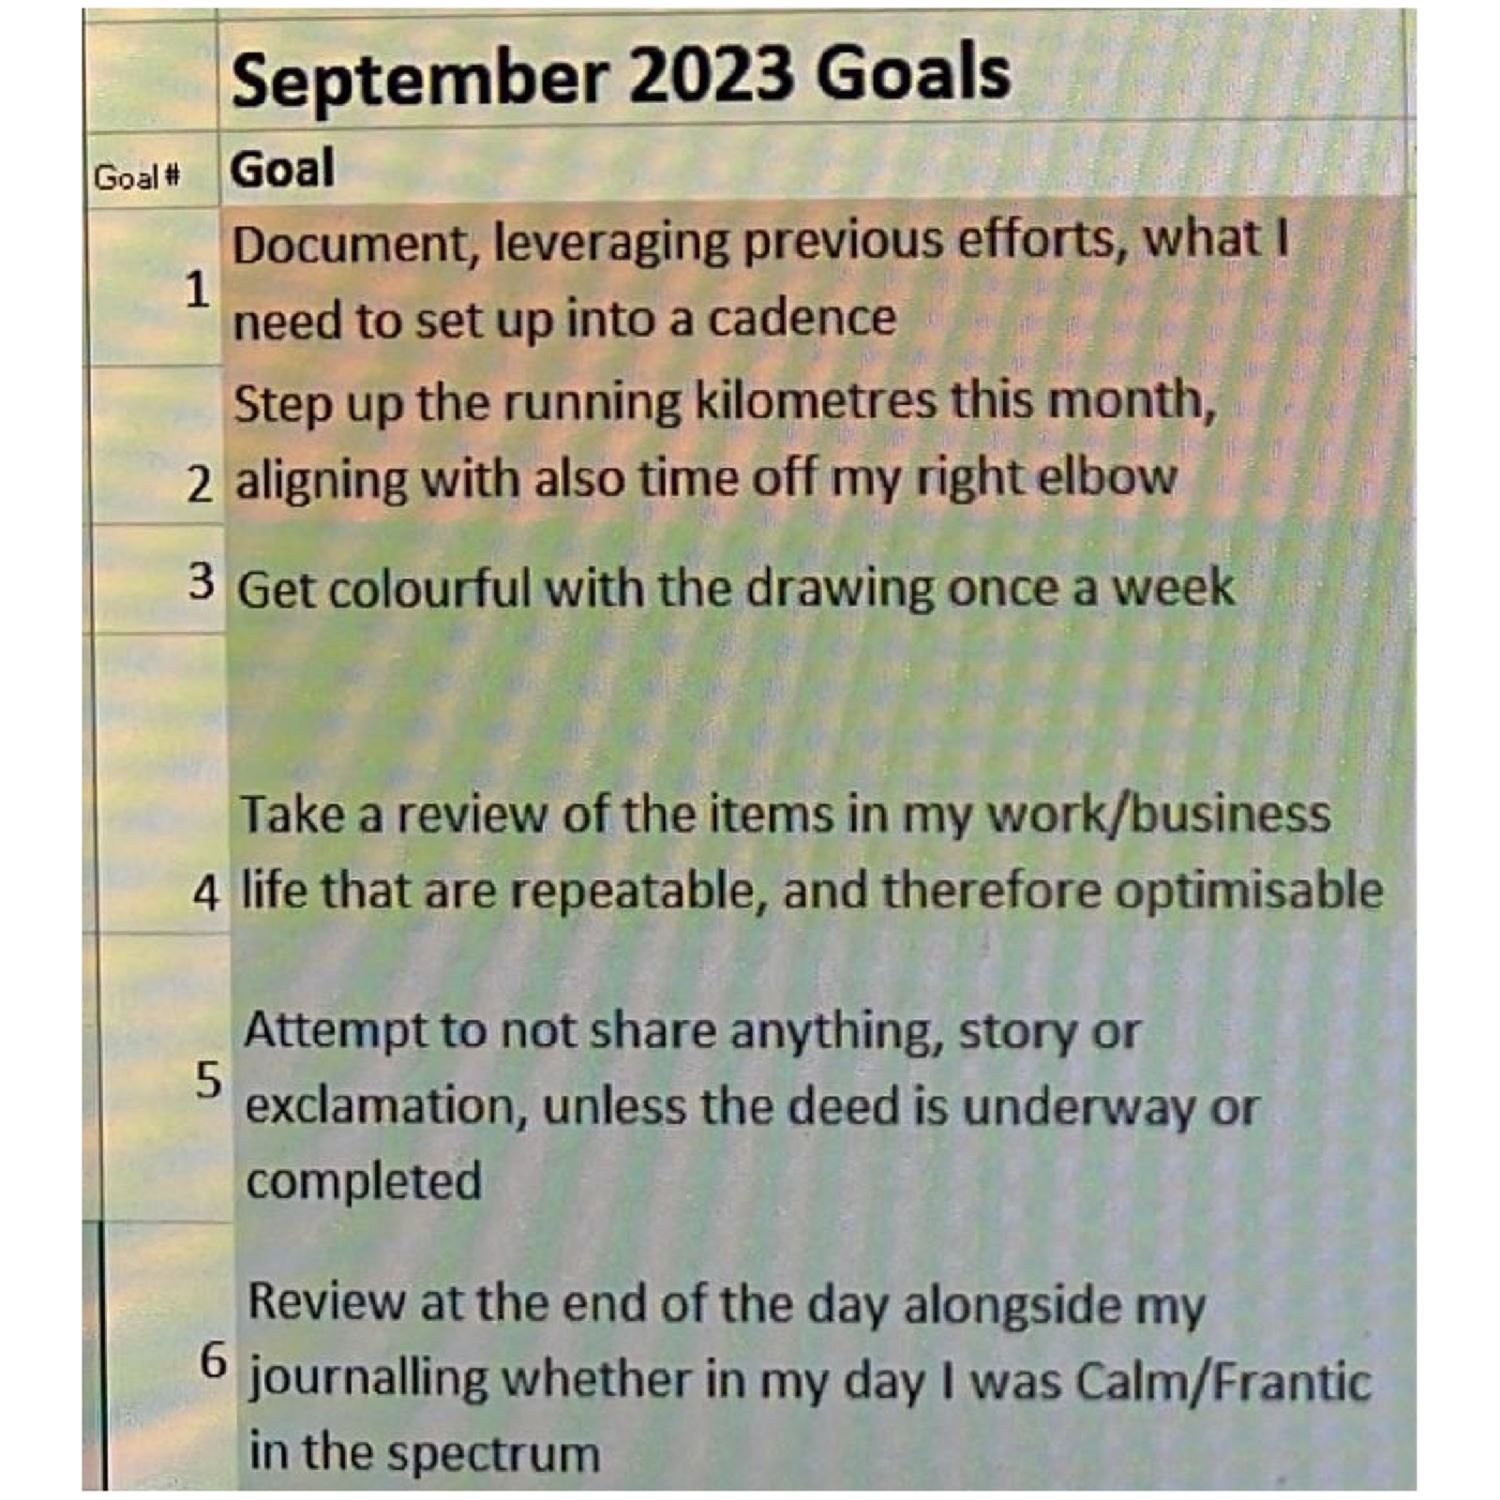 Juan's September 2023 goals